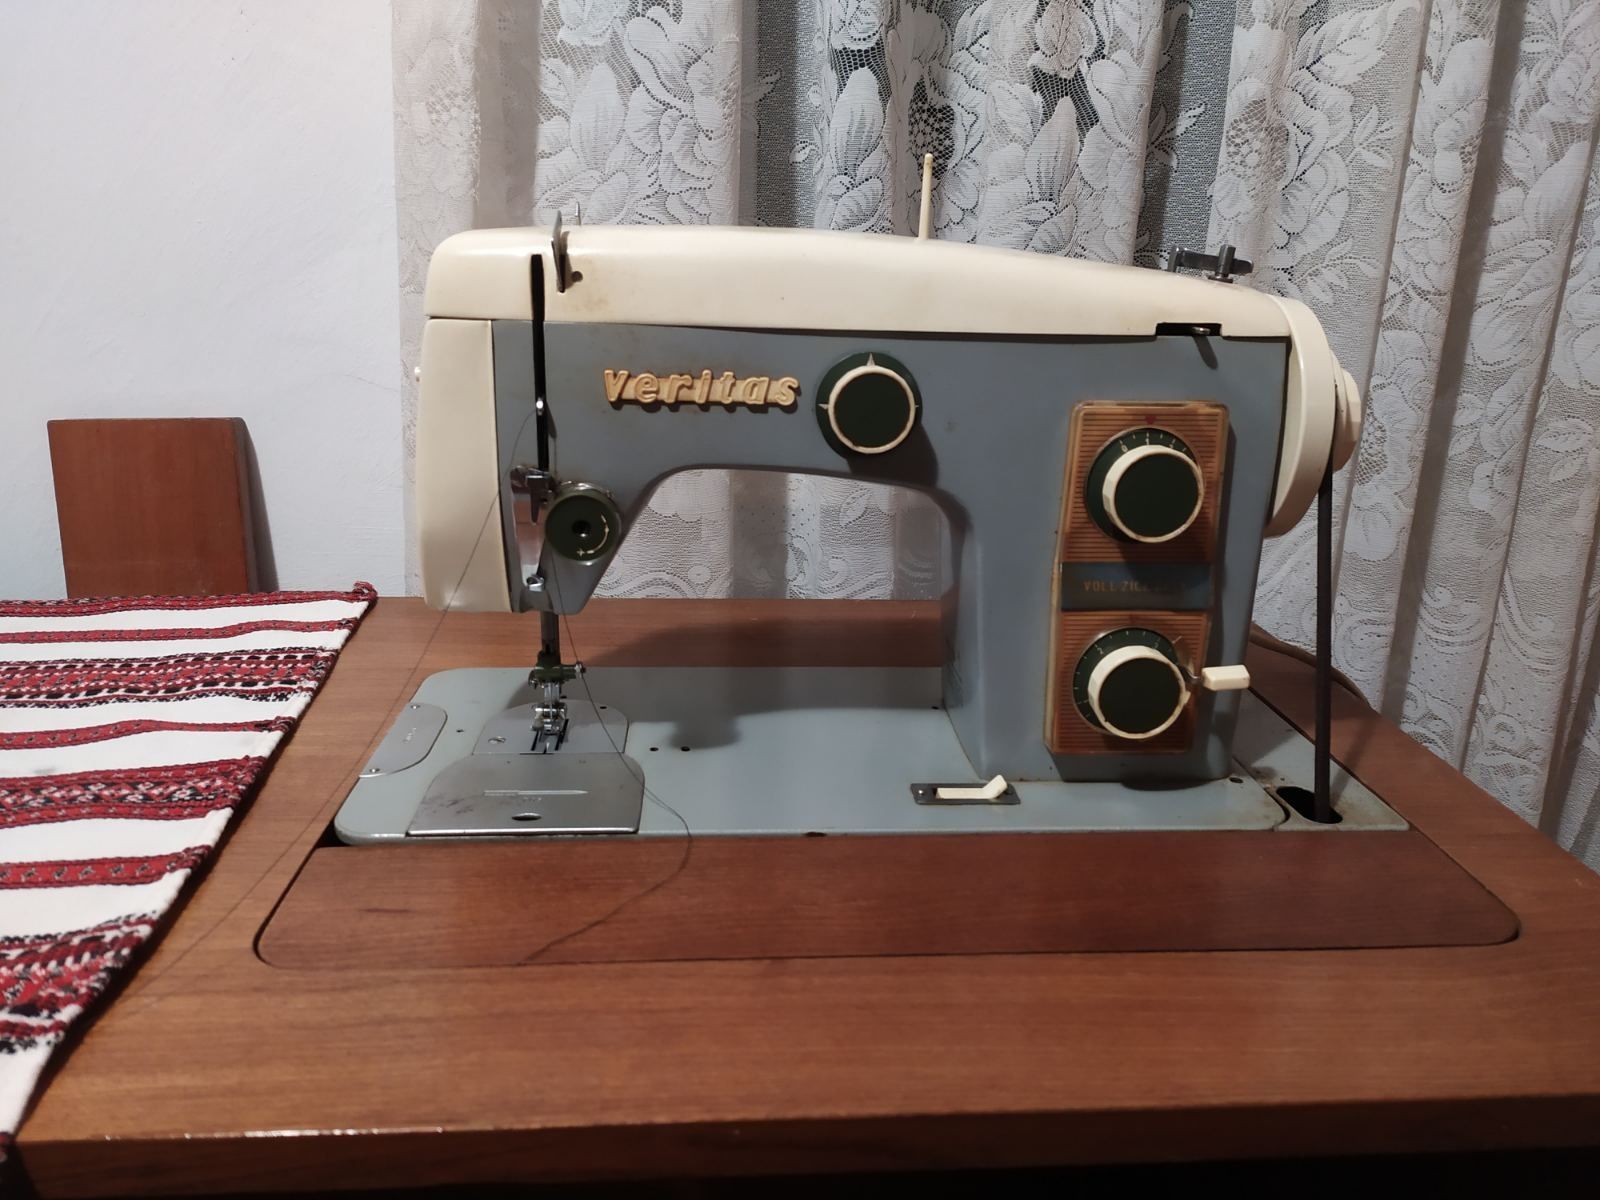 Продам швейну машинку VERITAS в робочому стані.Виробник Німеччина.